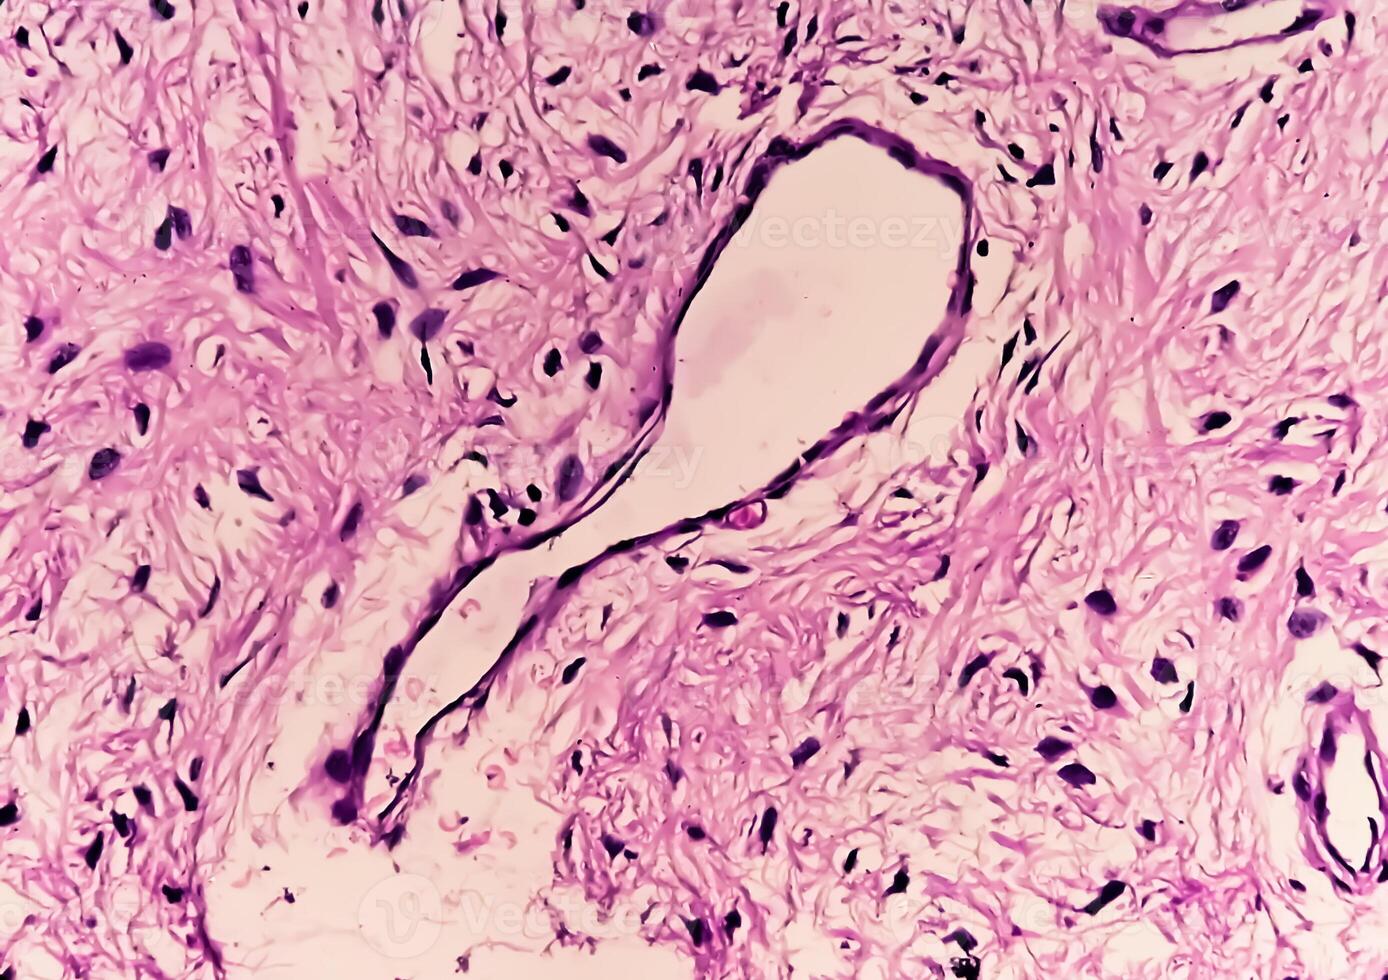 pierna pañuelo de papel biopsia, fotomicrográfico imagen demostración fibromixoma. superficial acral fibromixoma, raro lento creciente mixoide tumor foto